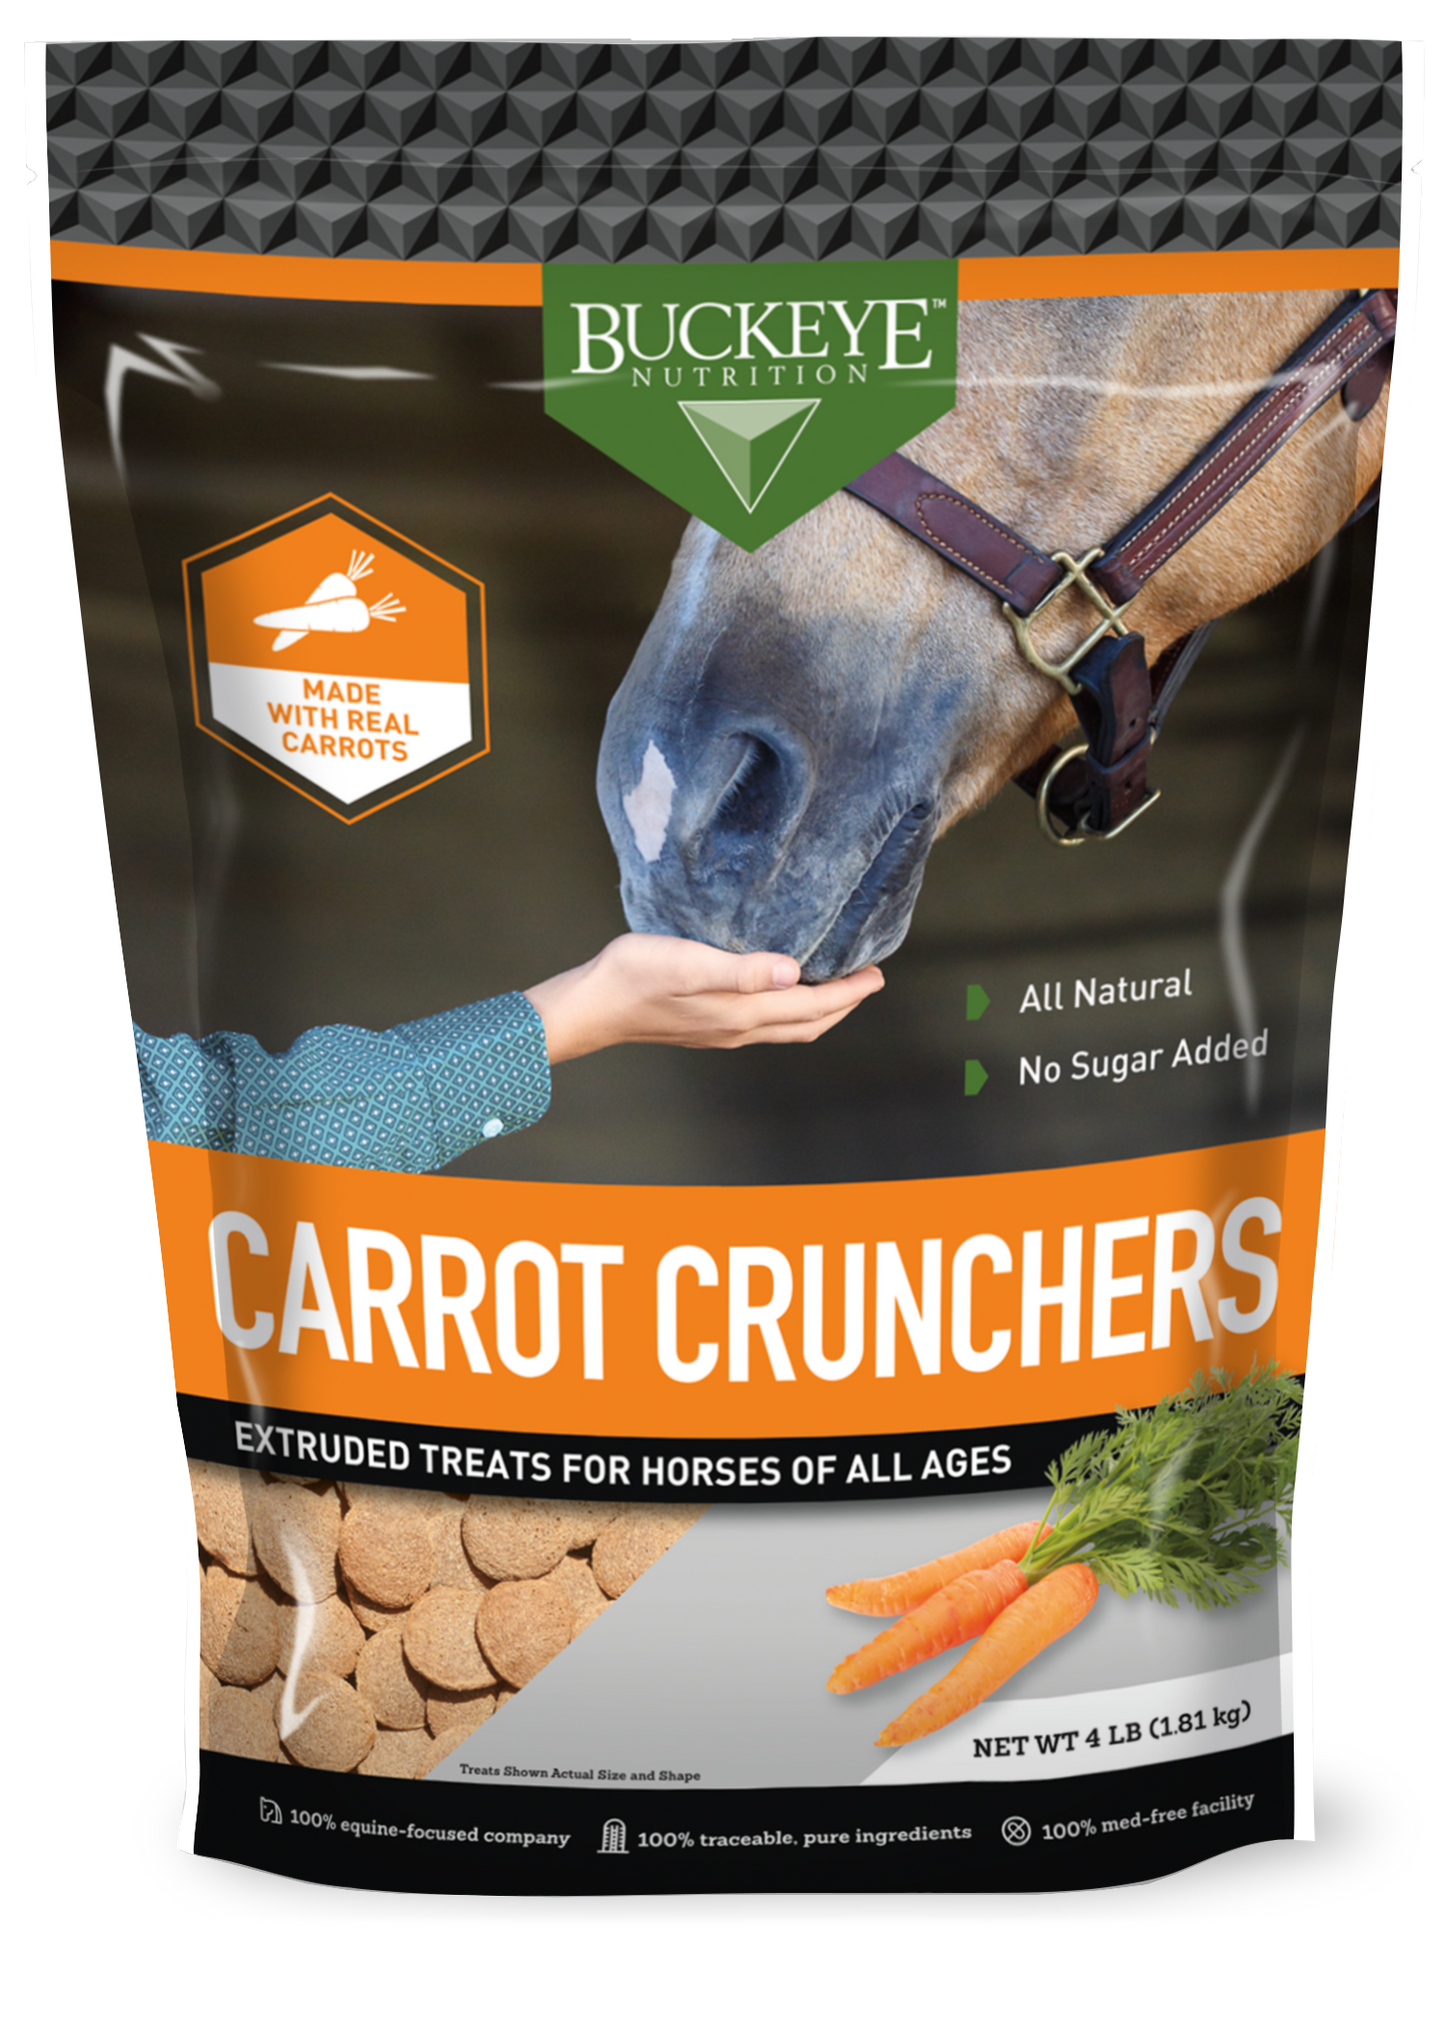 BUCKEYE™ Nutrition Carrot Crunchers